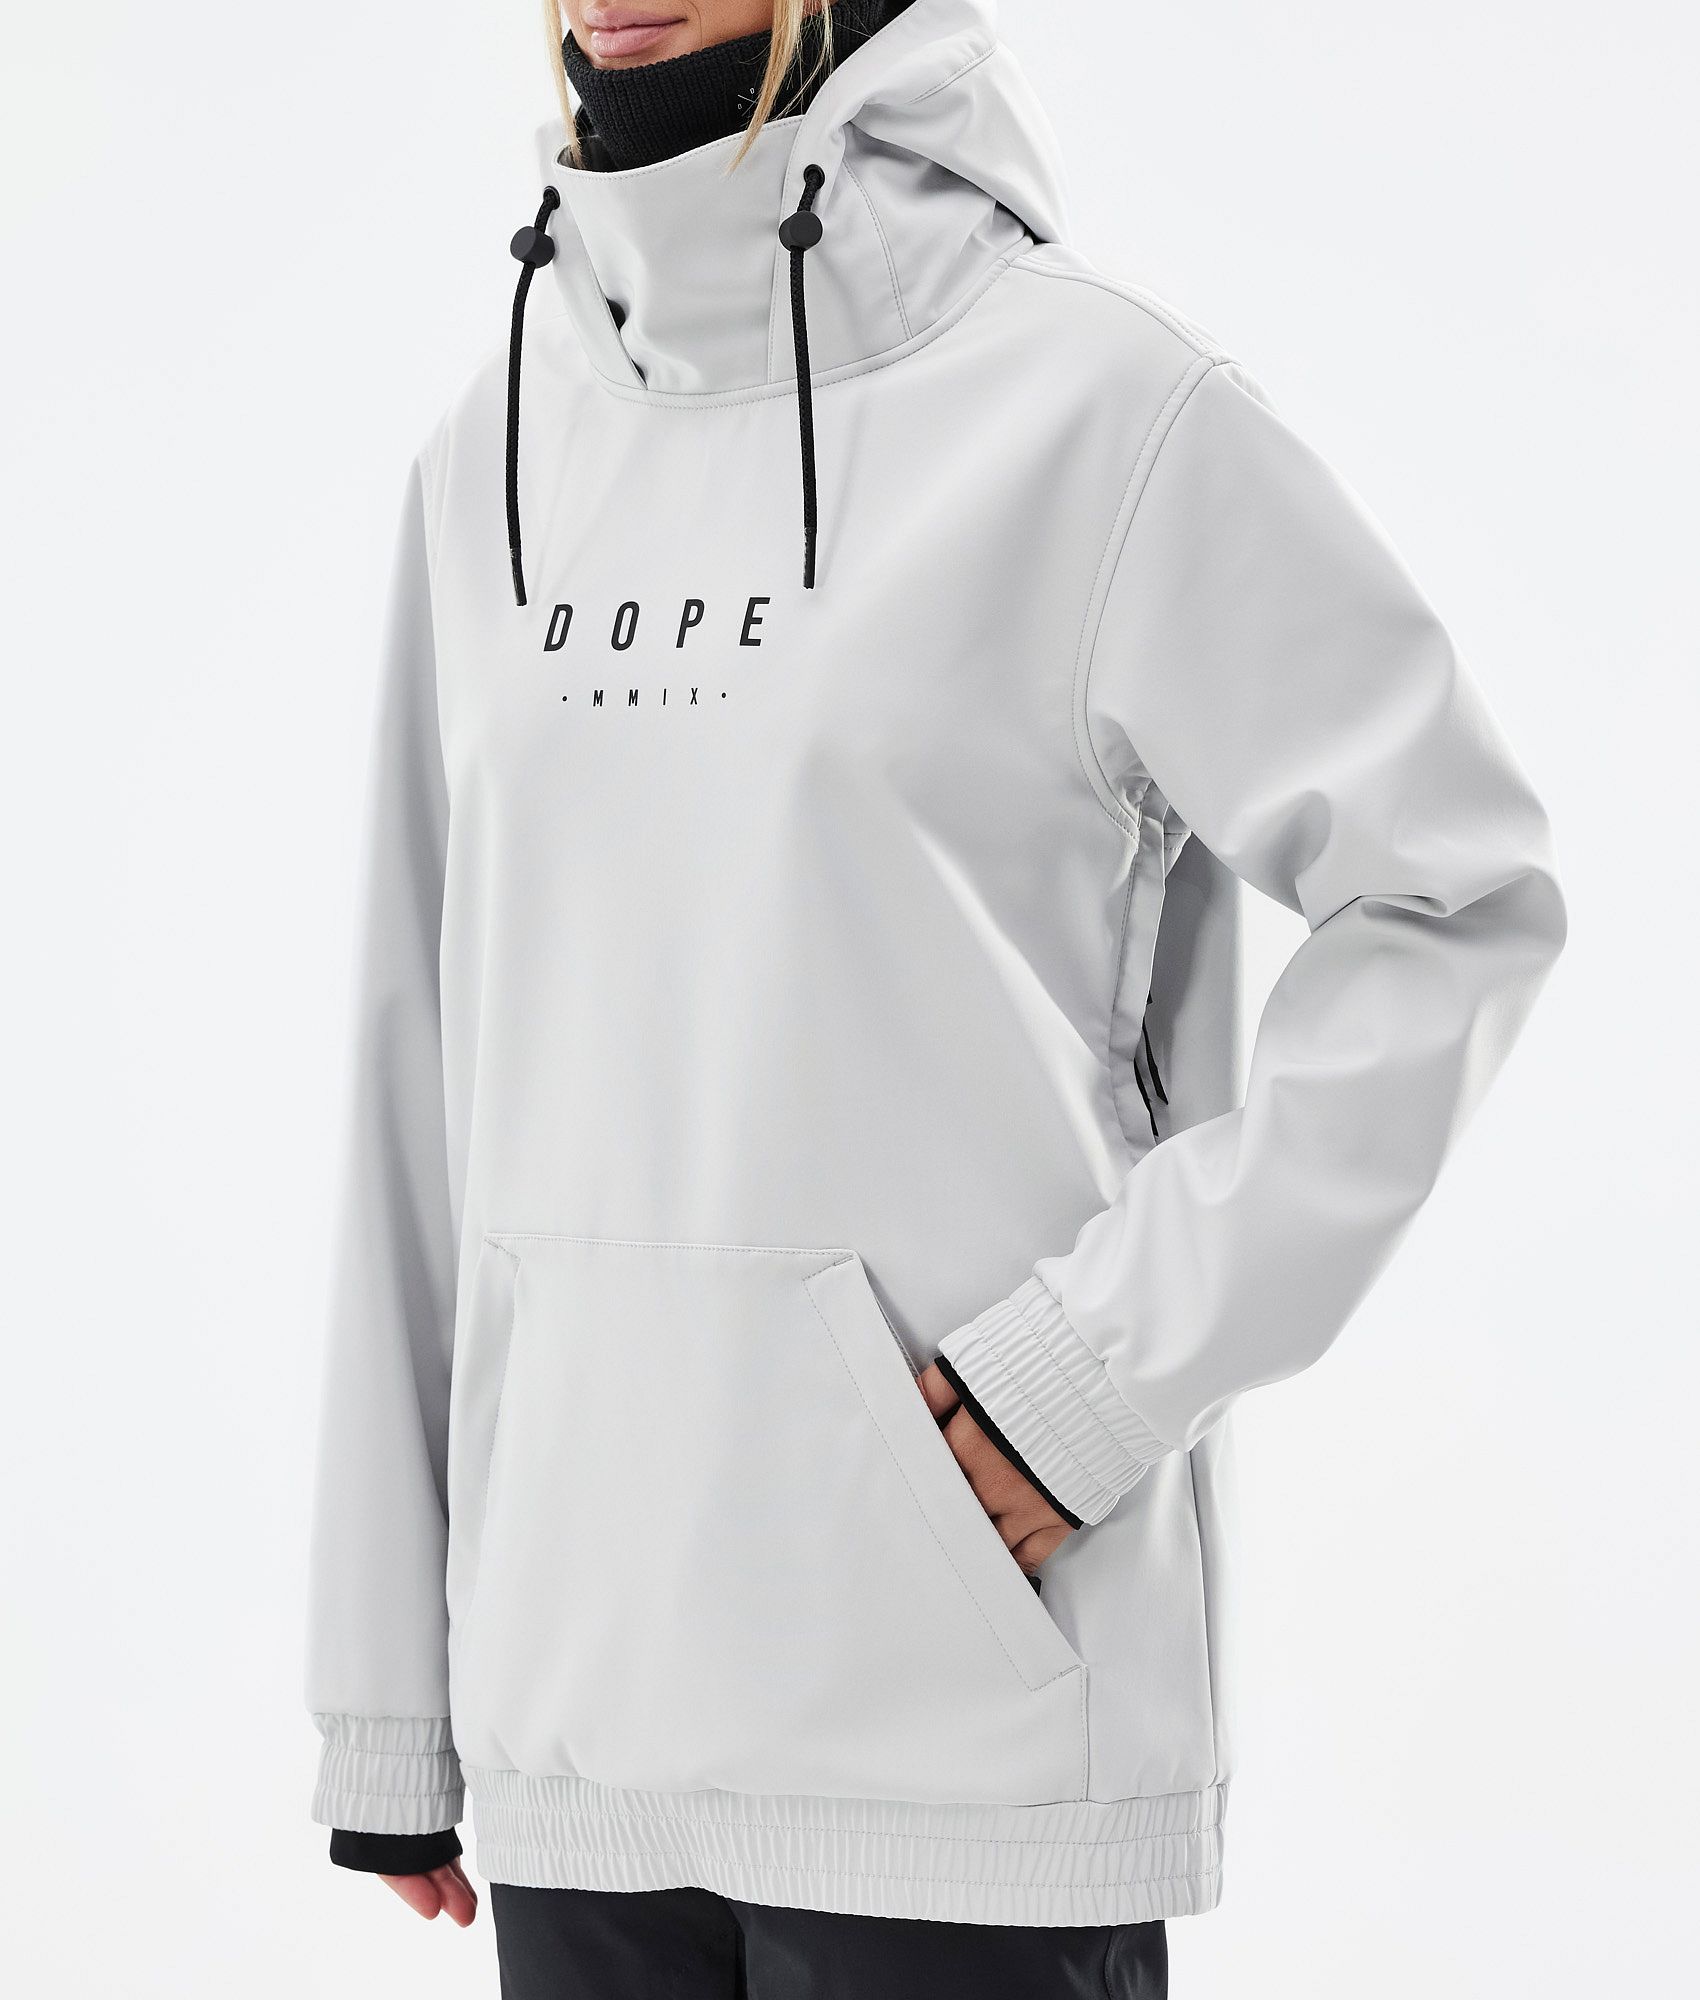 Dope Yeti W 2022 Women's Snowboard Jacket Light Grey